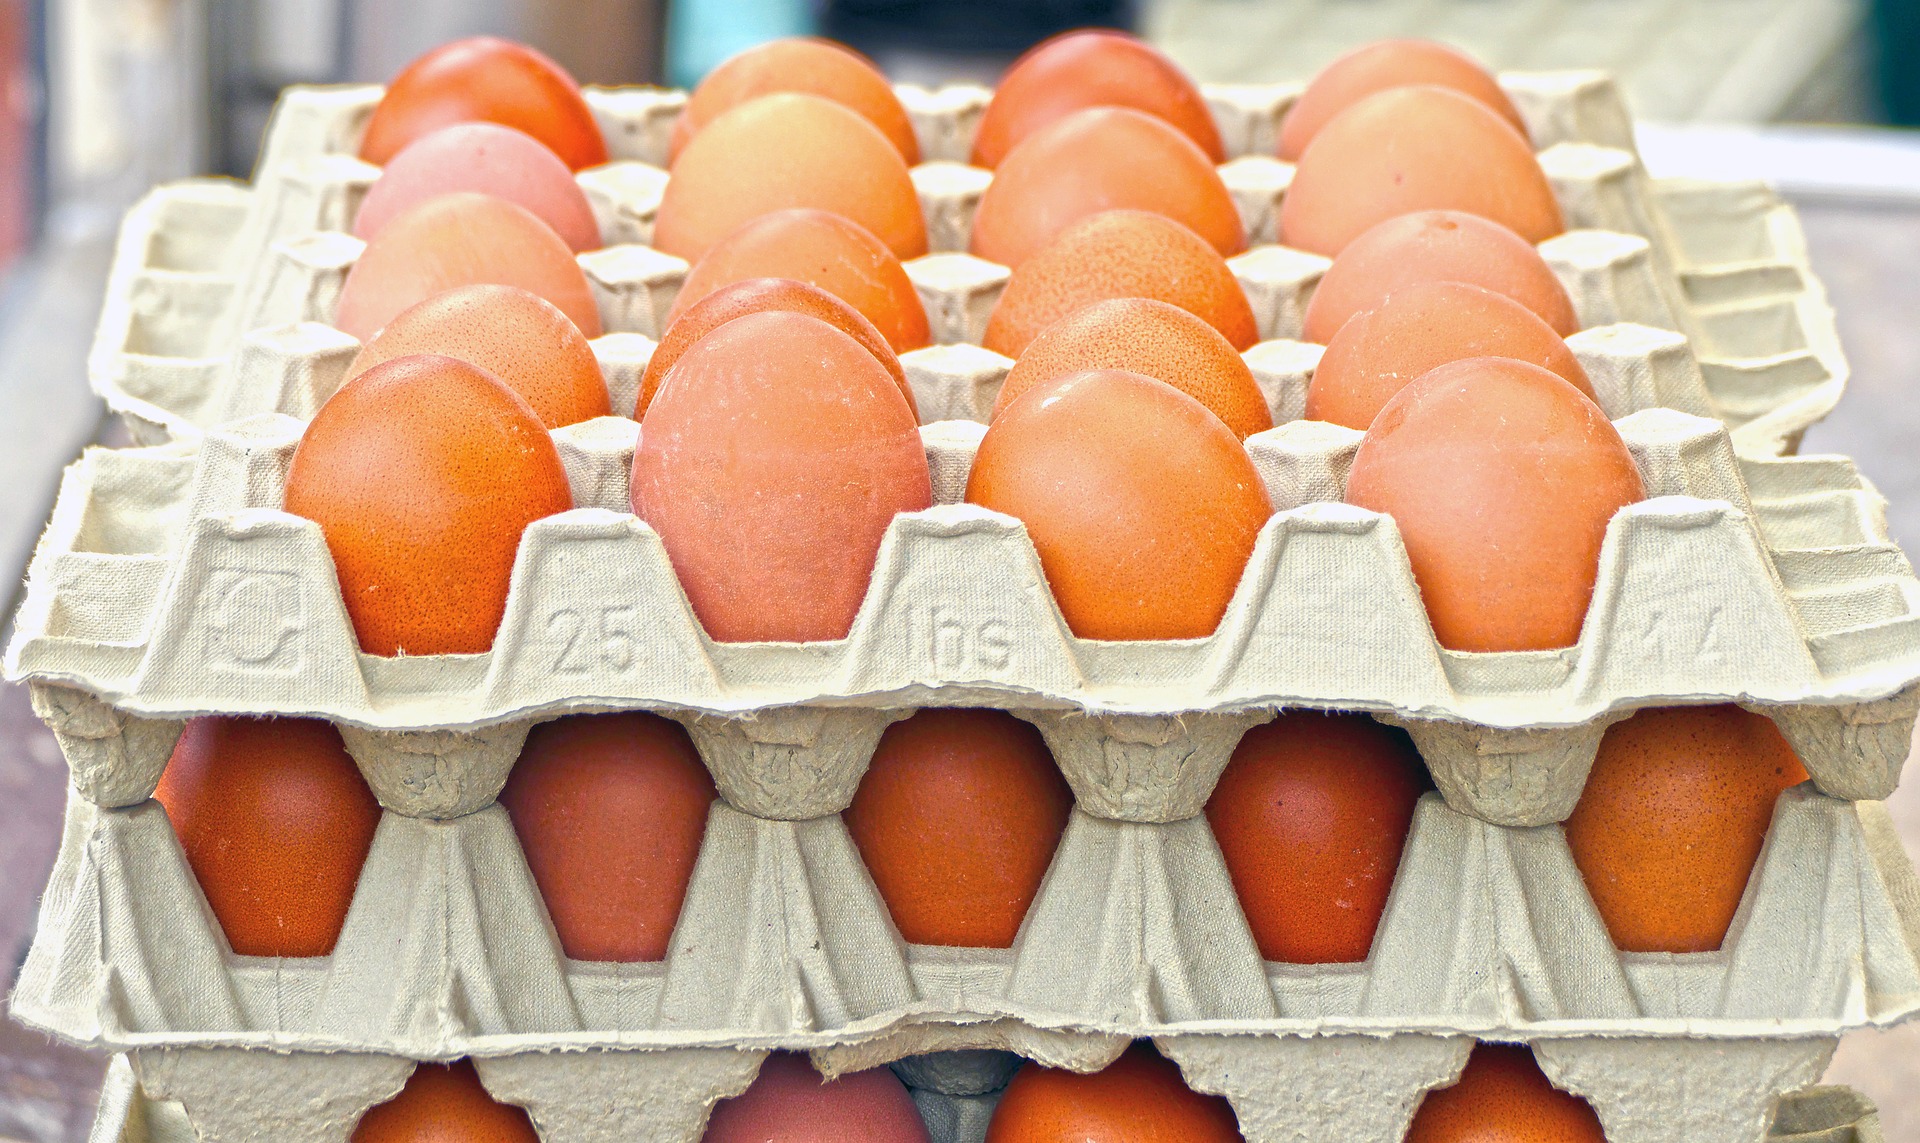 Elmondták a tojástermelők, mire lehet számítani húsvét előtt a boltokban